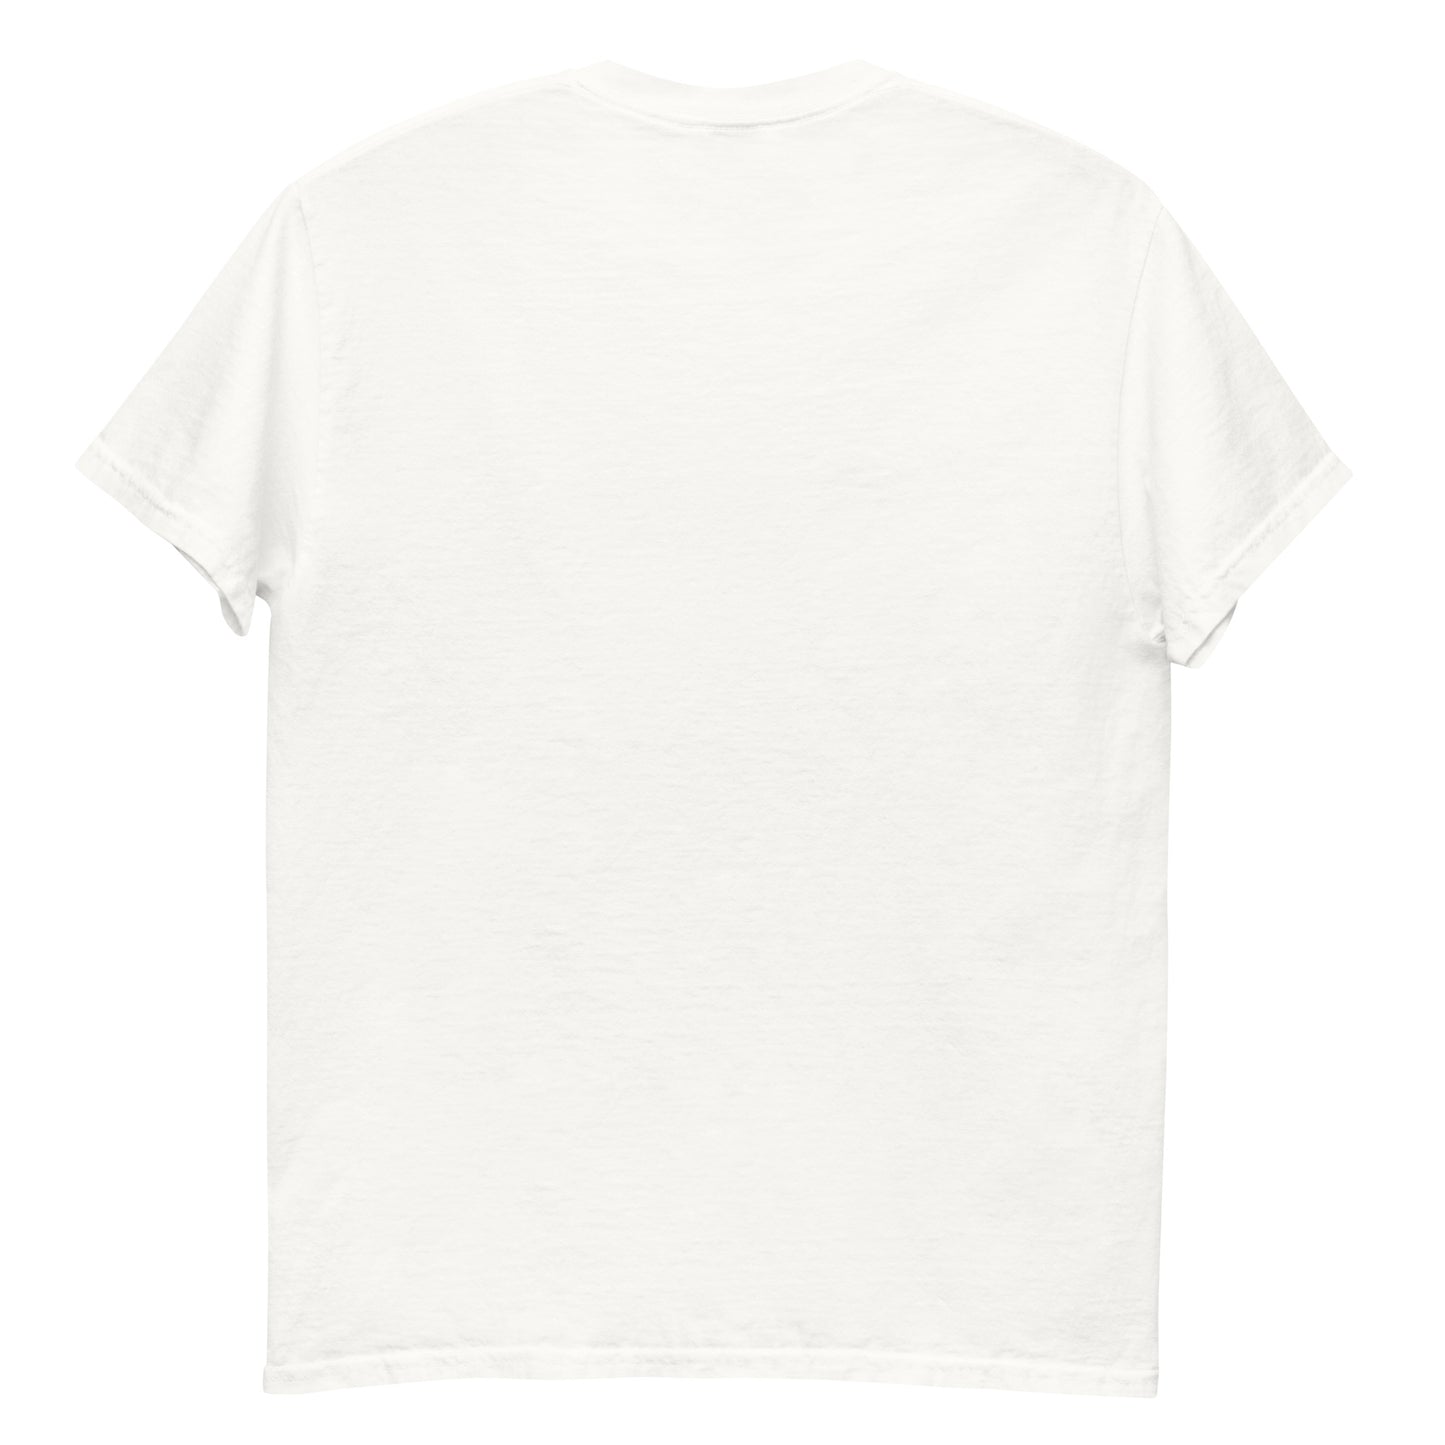 Ein unverzichtbares Premium-T-Shirt